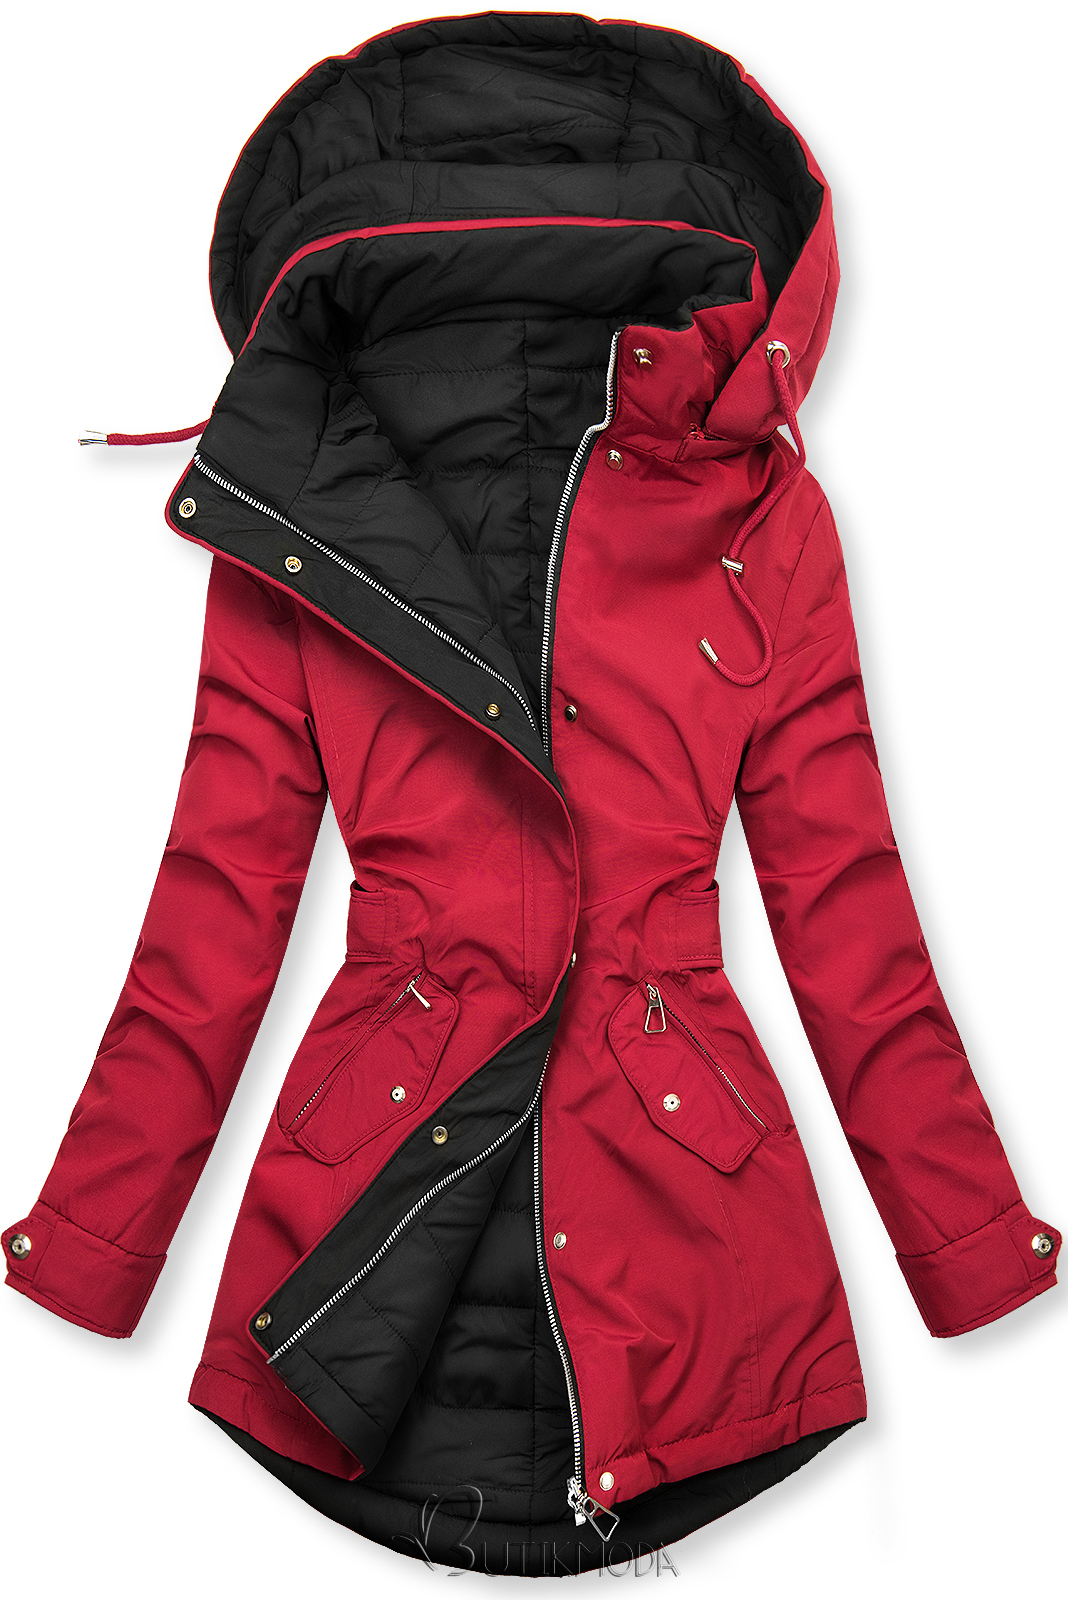 Kifordítható kabát behúzással - borvörös és fekete színű